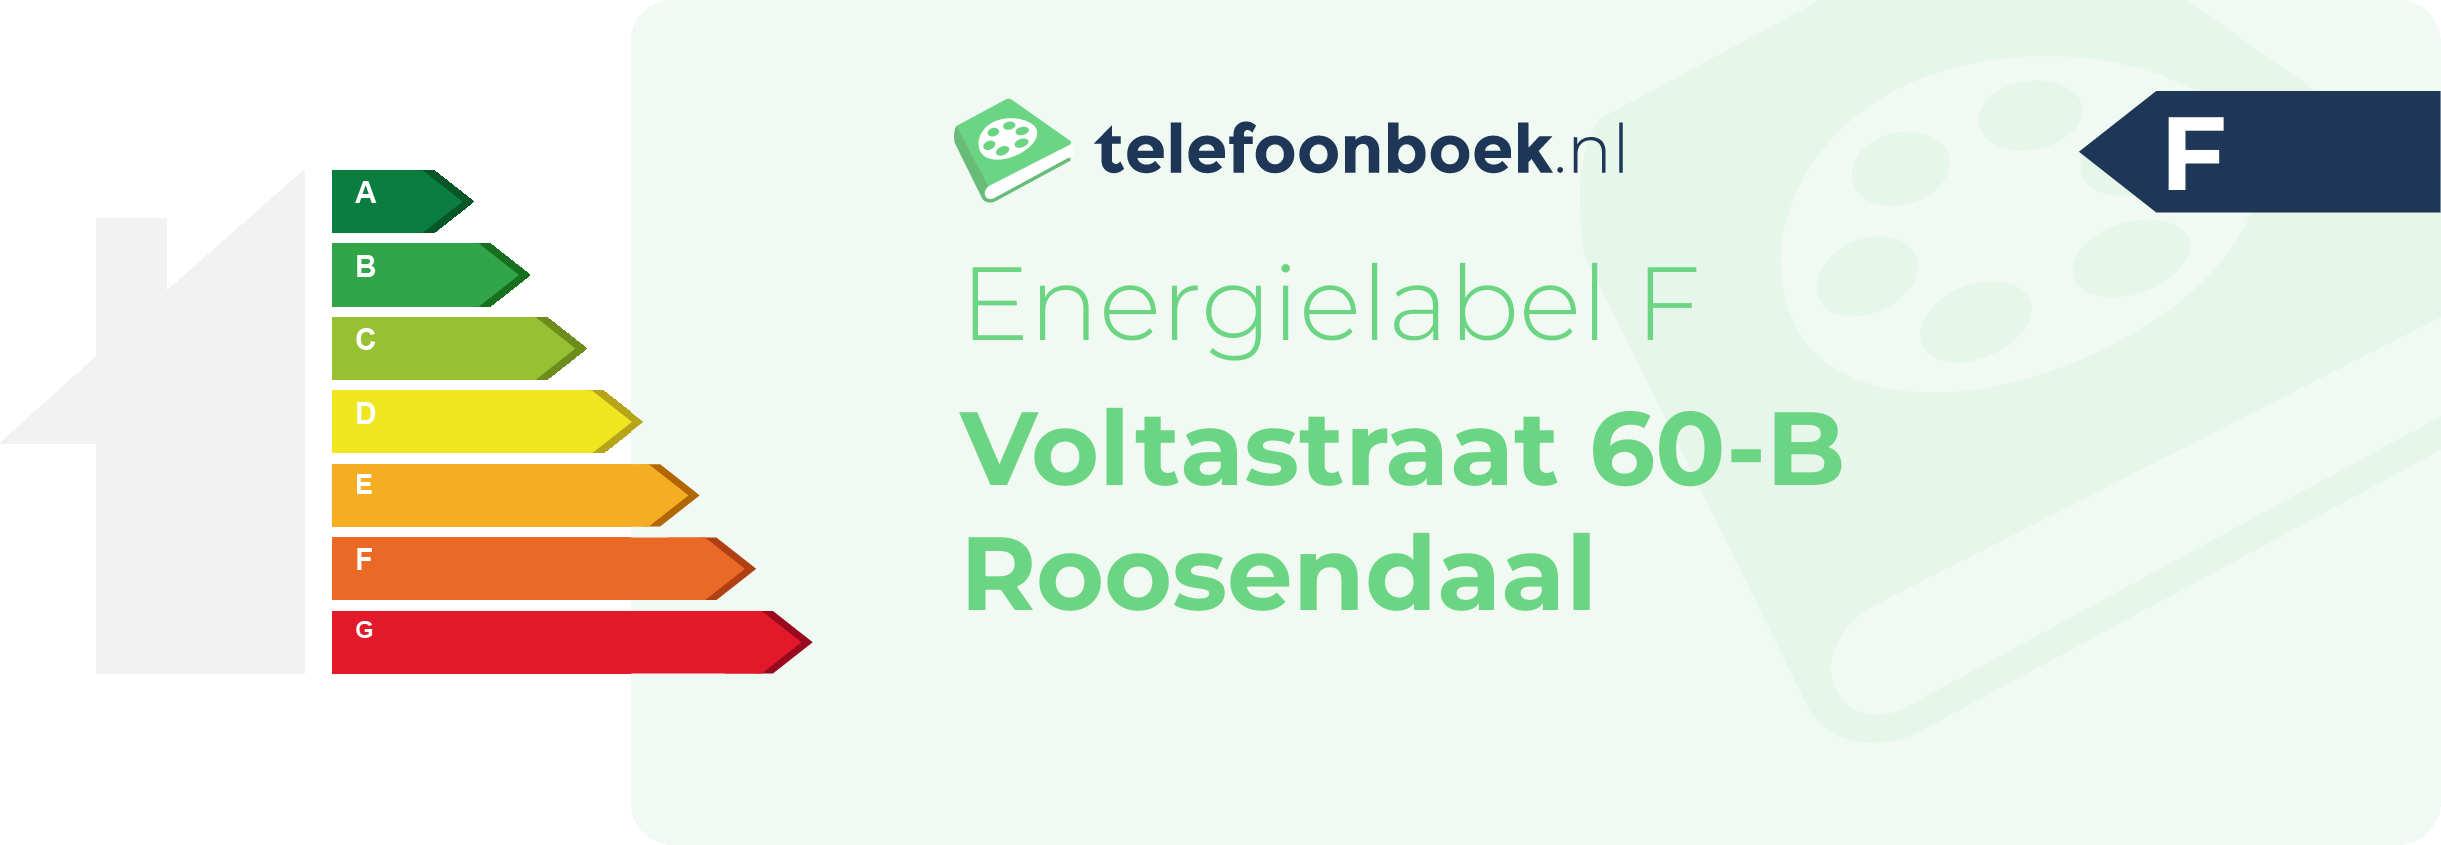 Energielabel Voltastraat 60-B Roosendaal